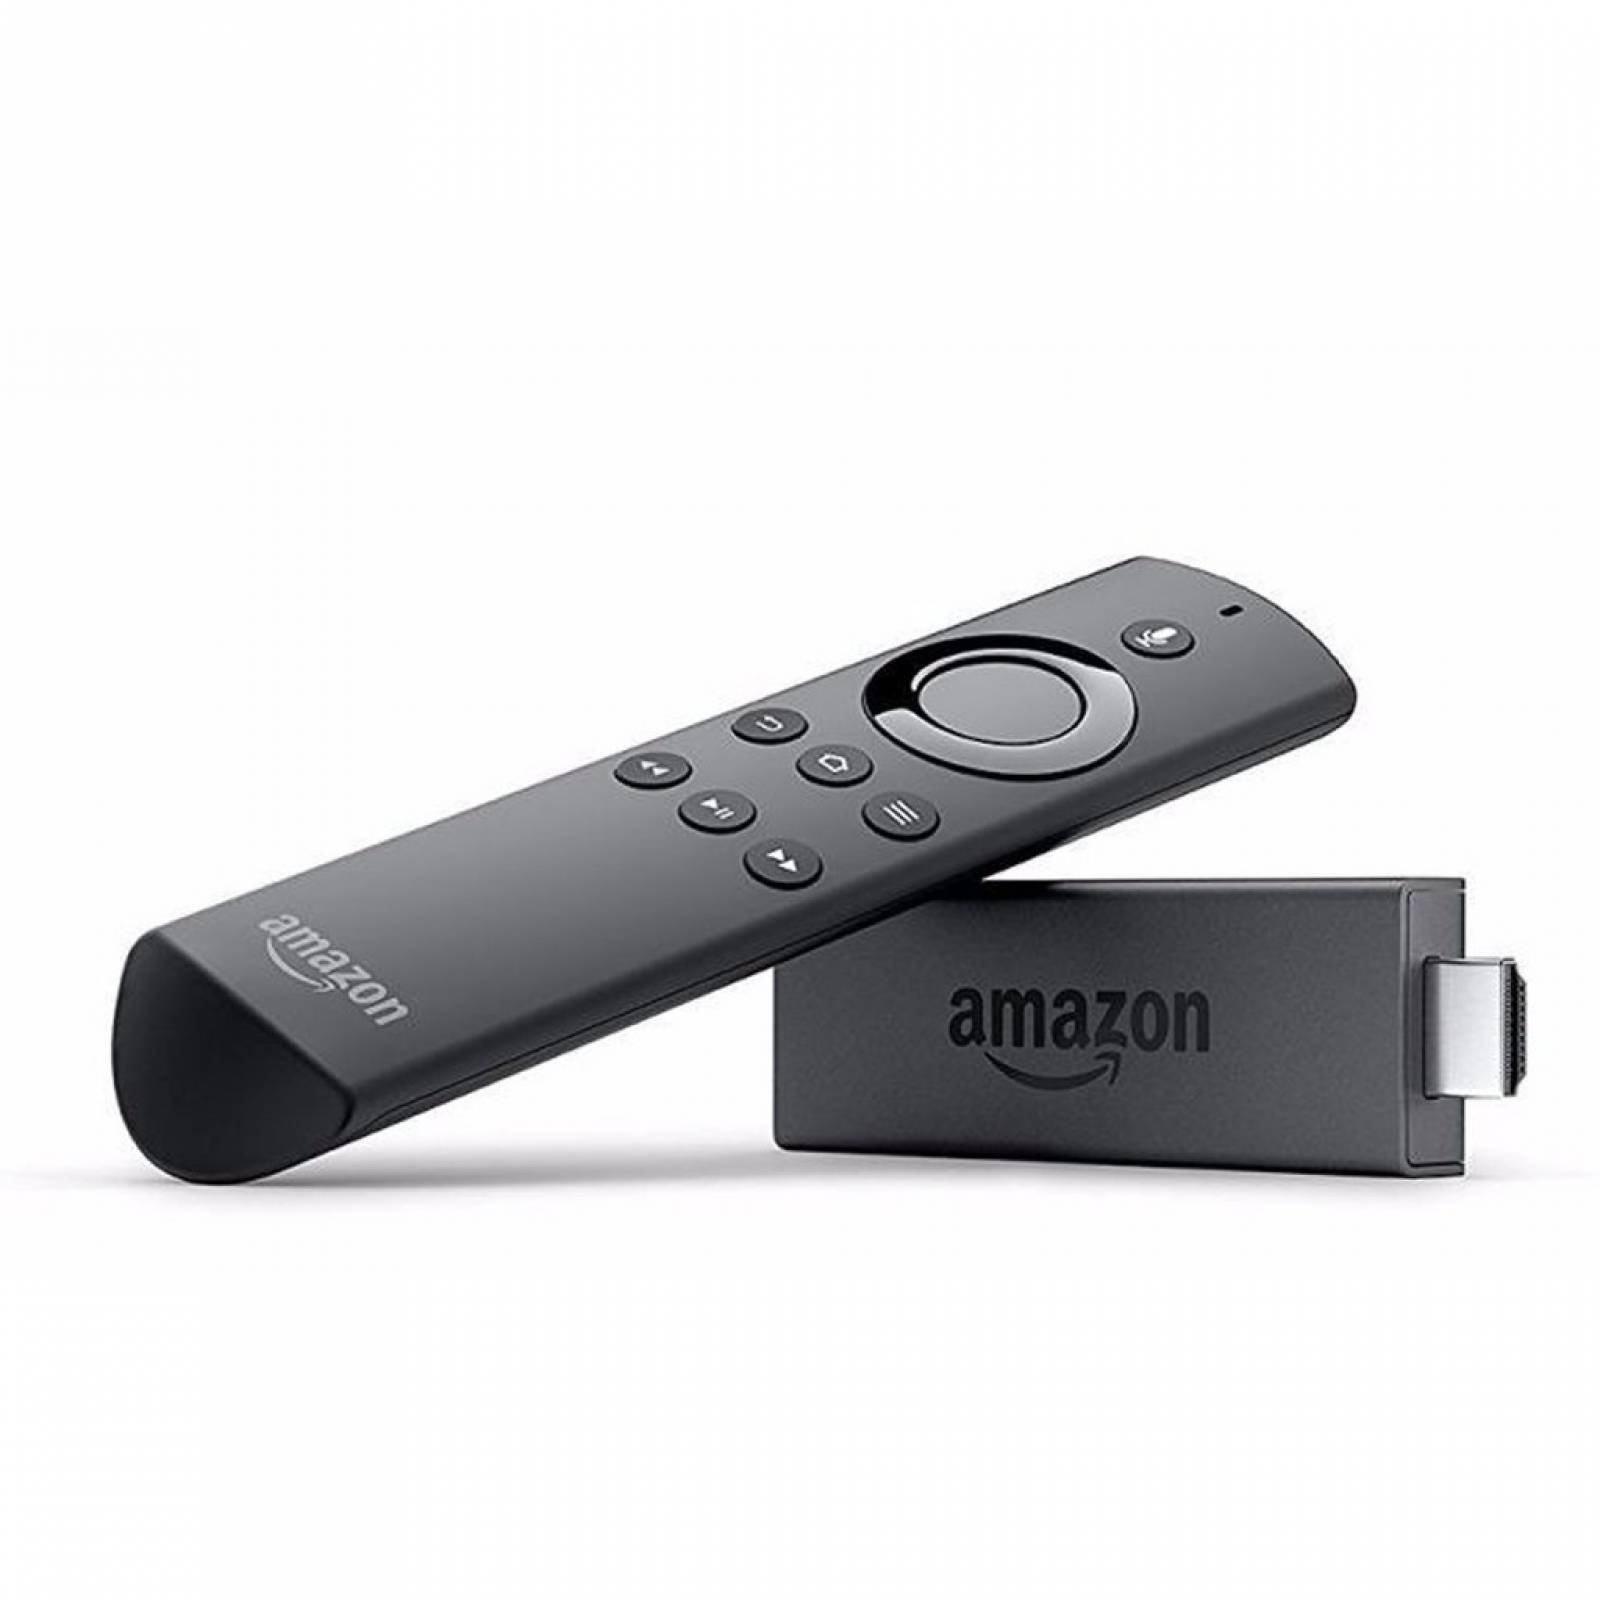 Reproductor Multimedia Fire Tv Stick Control Remoto Amazon